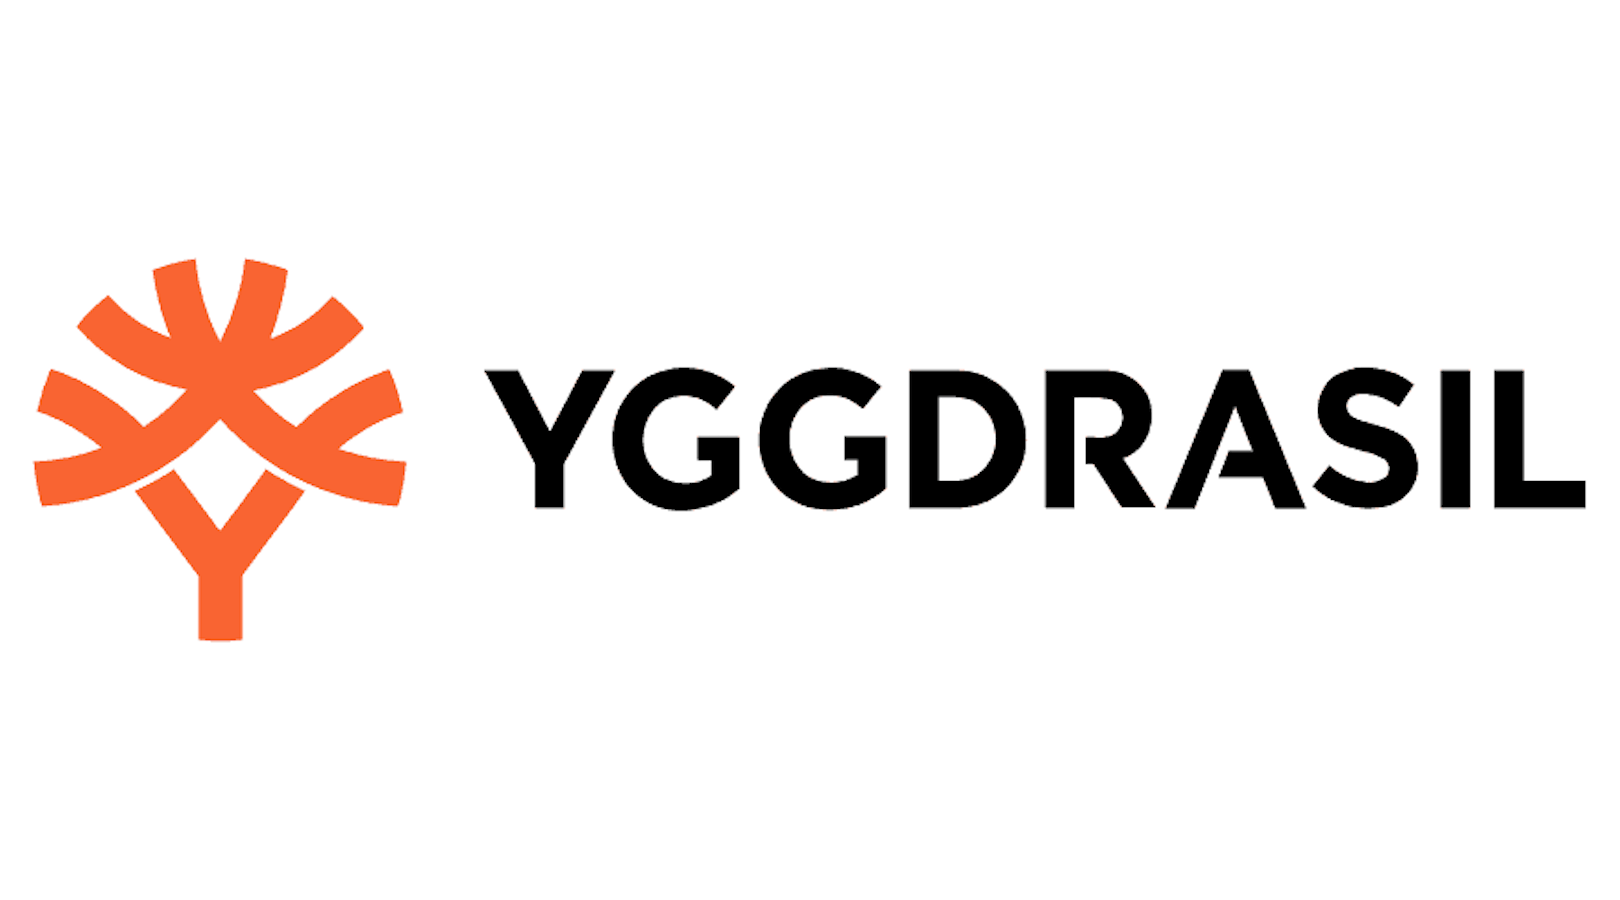 Yggdrasil rośnie w siłę w Niemczech dzięki umowie z Jokerstar